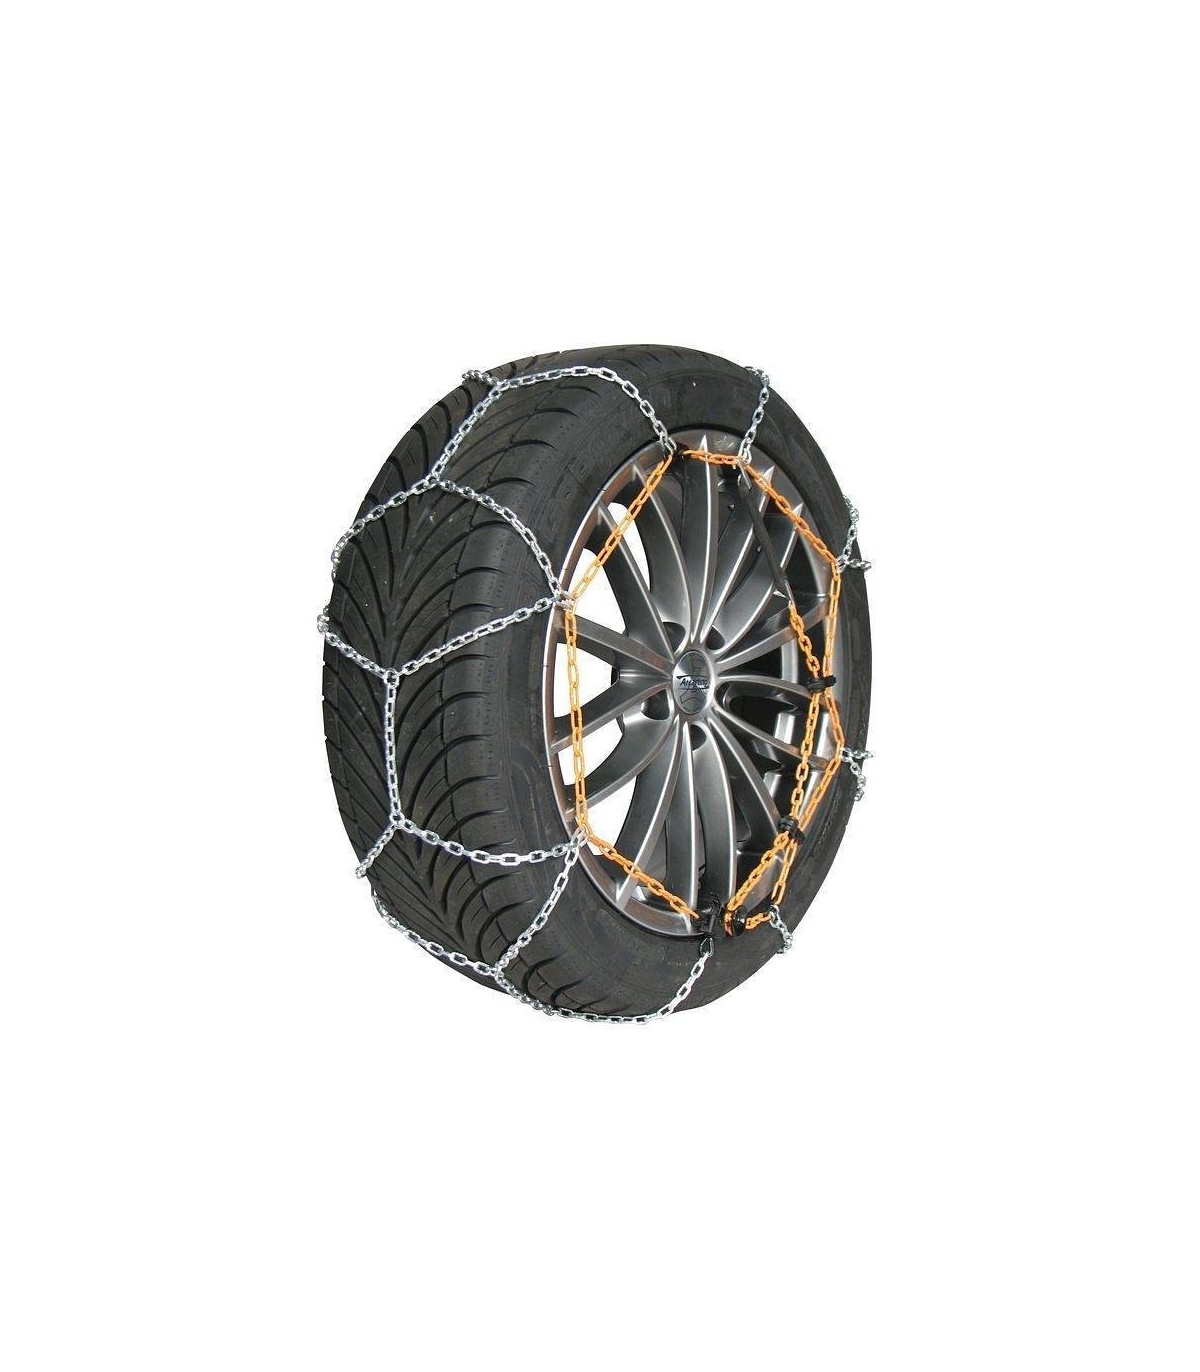 Chaine neige 9mm pneu 225/45R17 montage rapide sécurité garantie